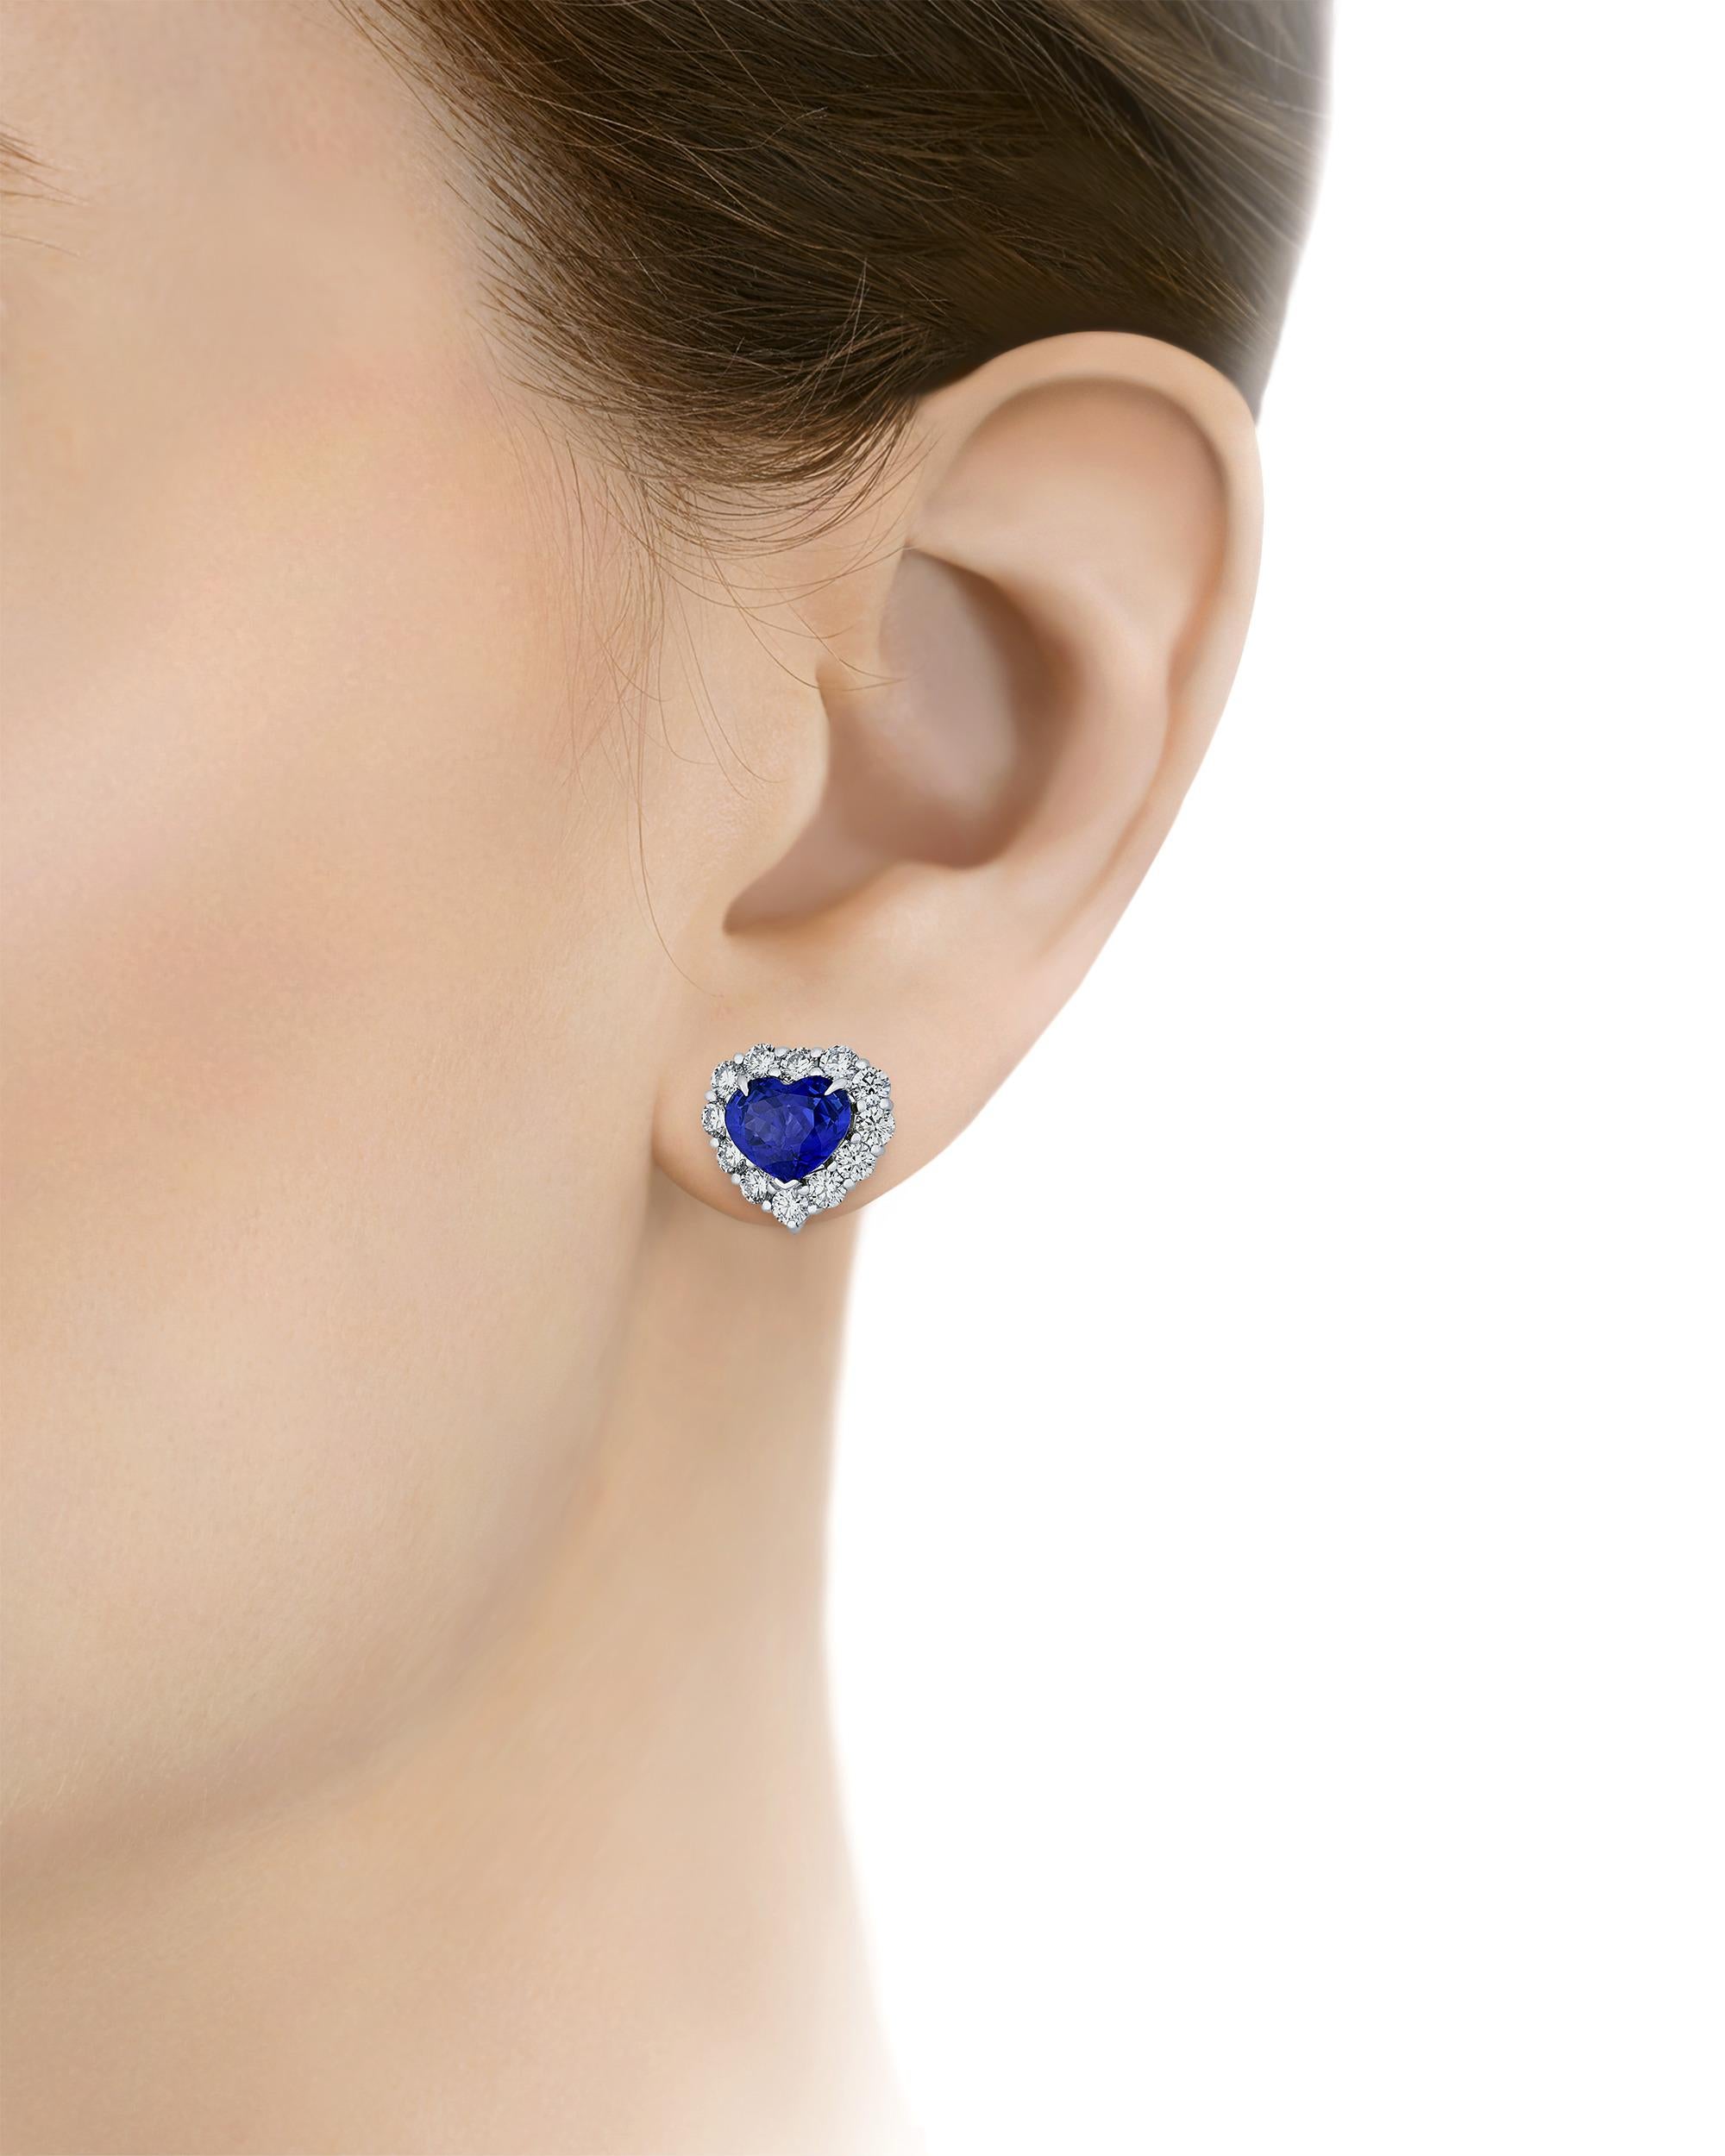 Zwei beeindruckende herzförmige Ceylon-Saphire von insgesamt 6,11 Karat sind in diesen glamourösen Ohrringen gefasst. Die Saphire mit dem leuchtenden 